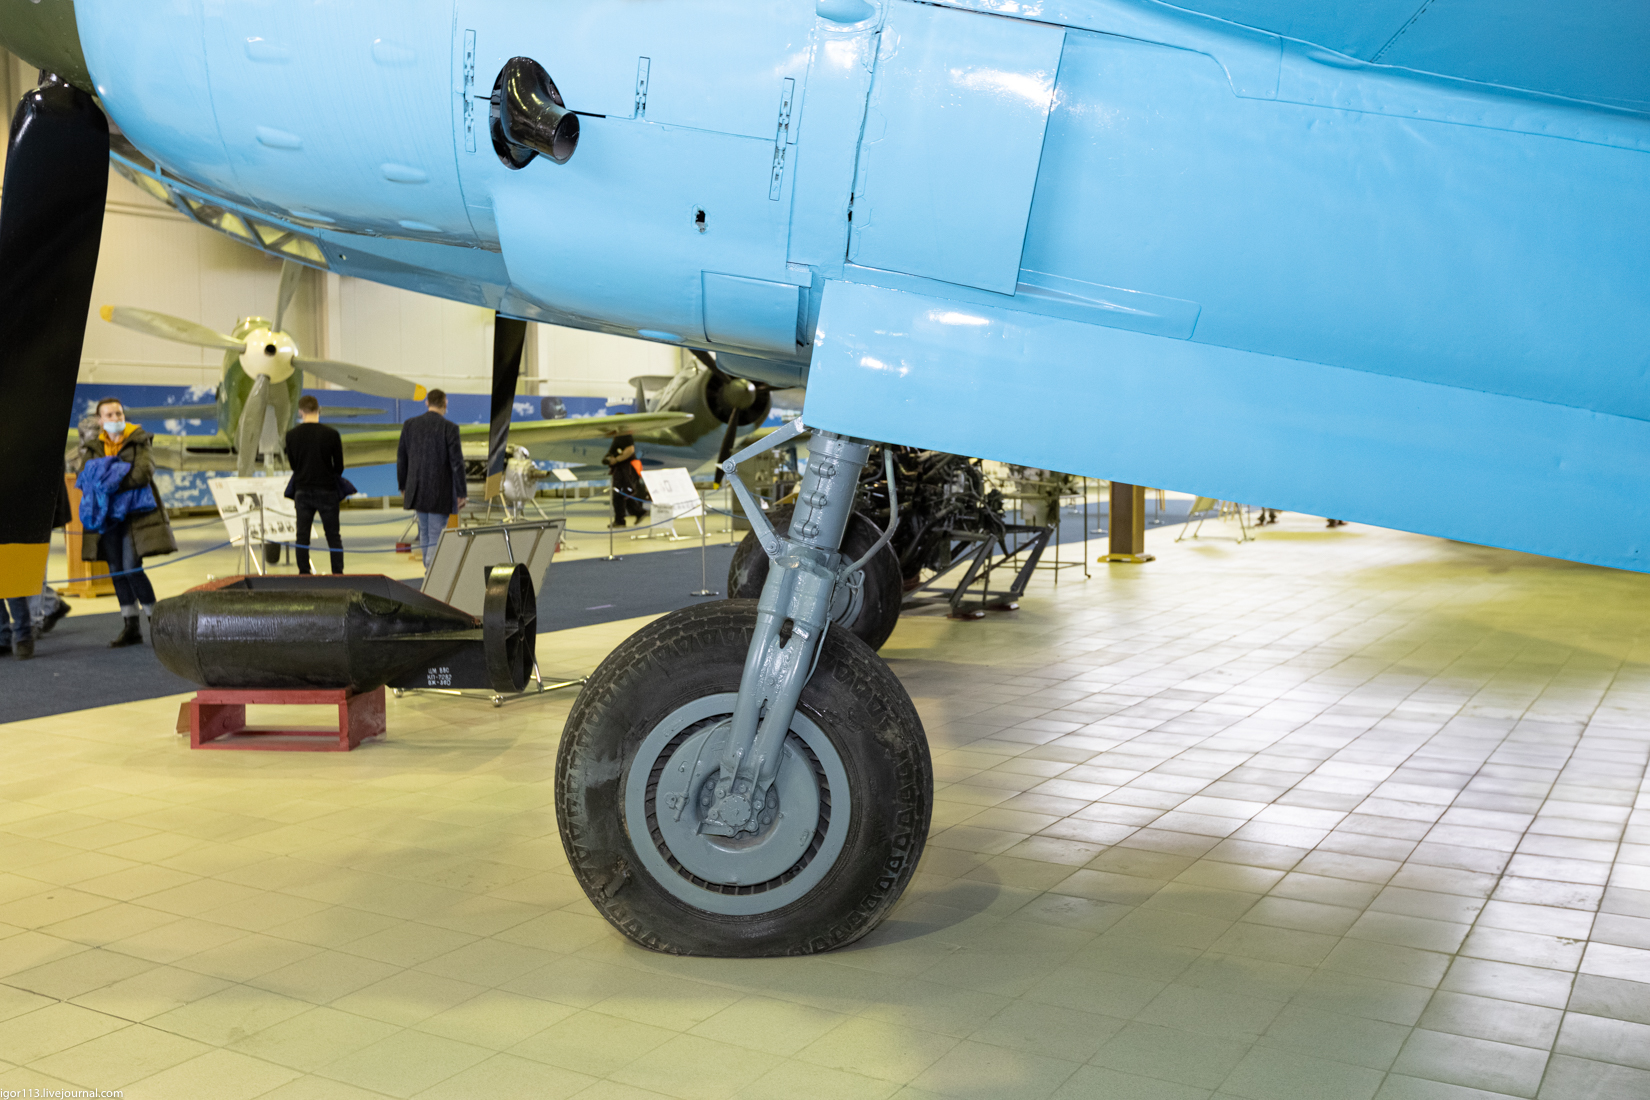 Музей ВВС Монино 030421 зал 2: фронтовой бомбардировщик Ту-2. 